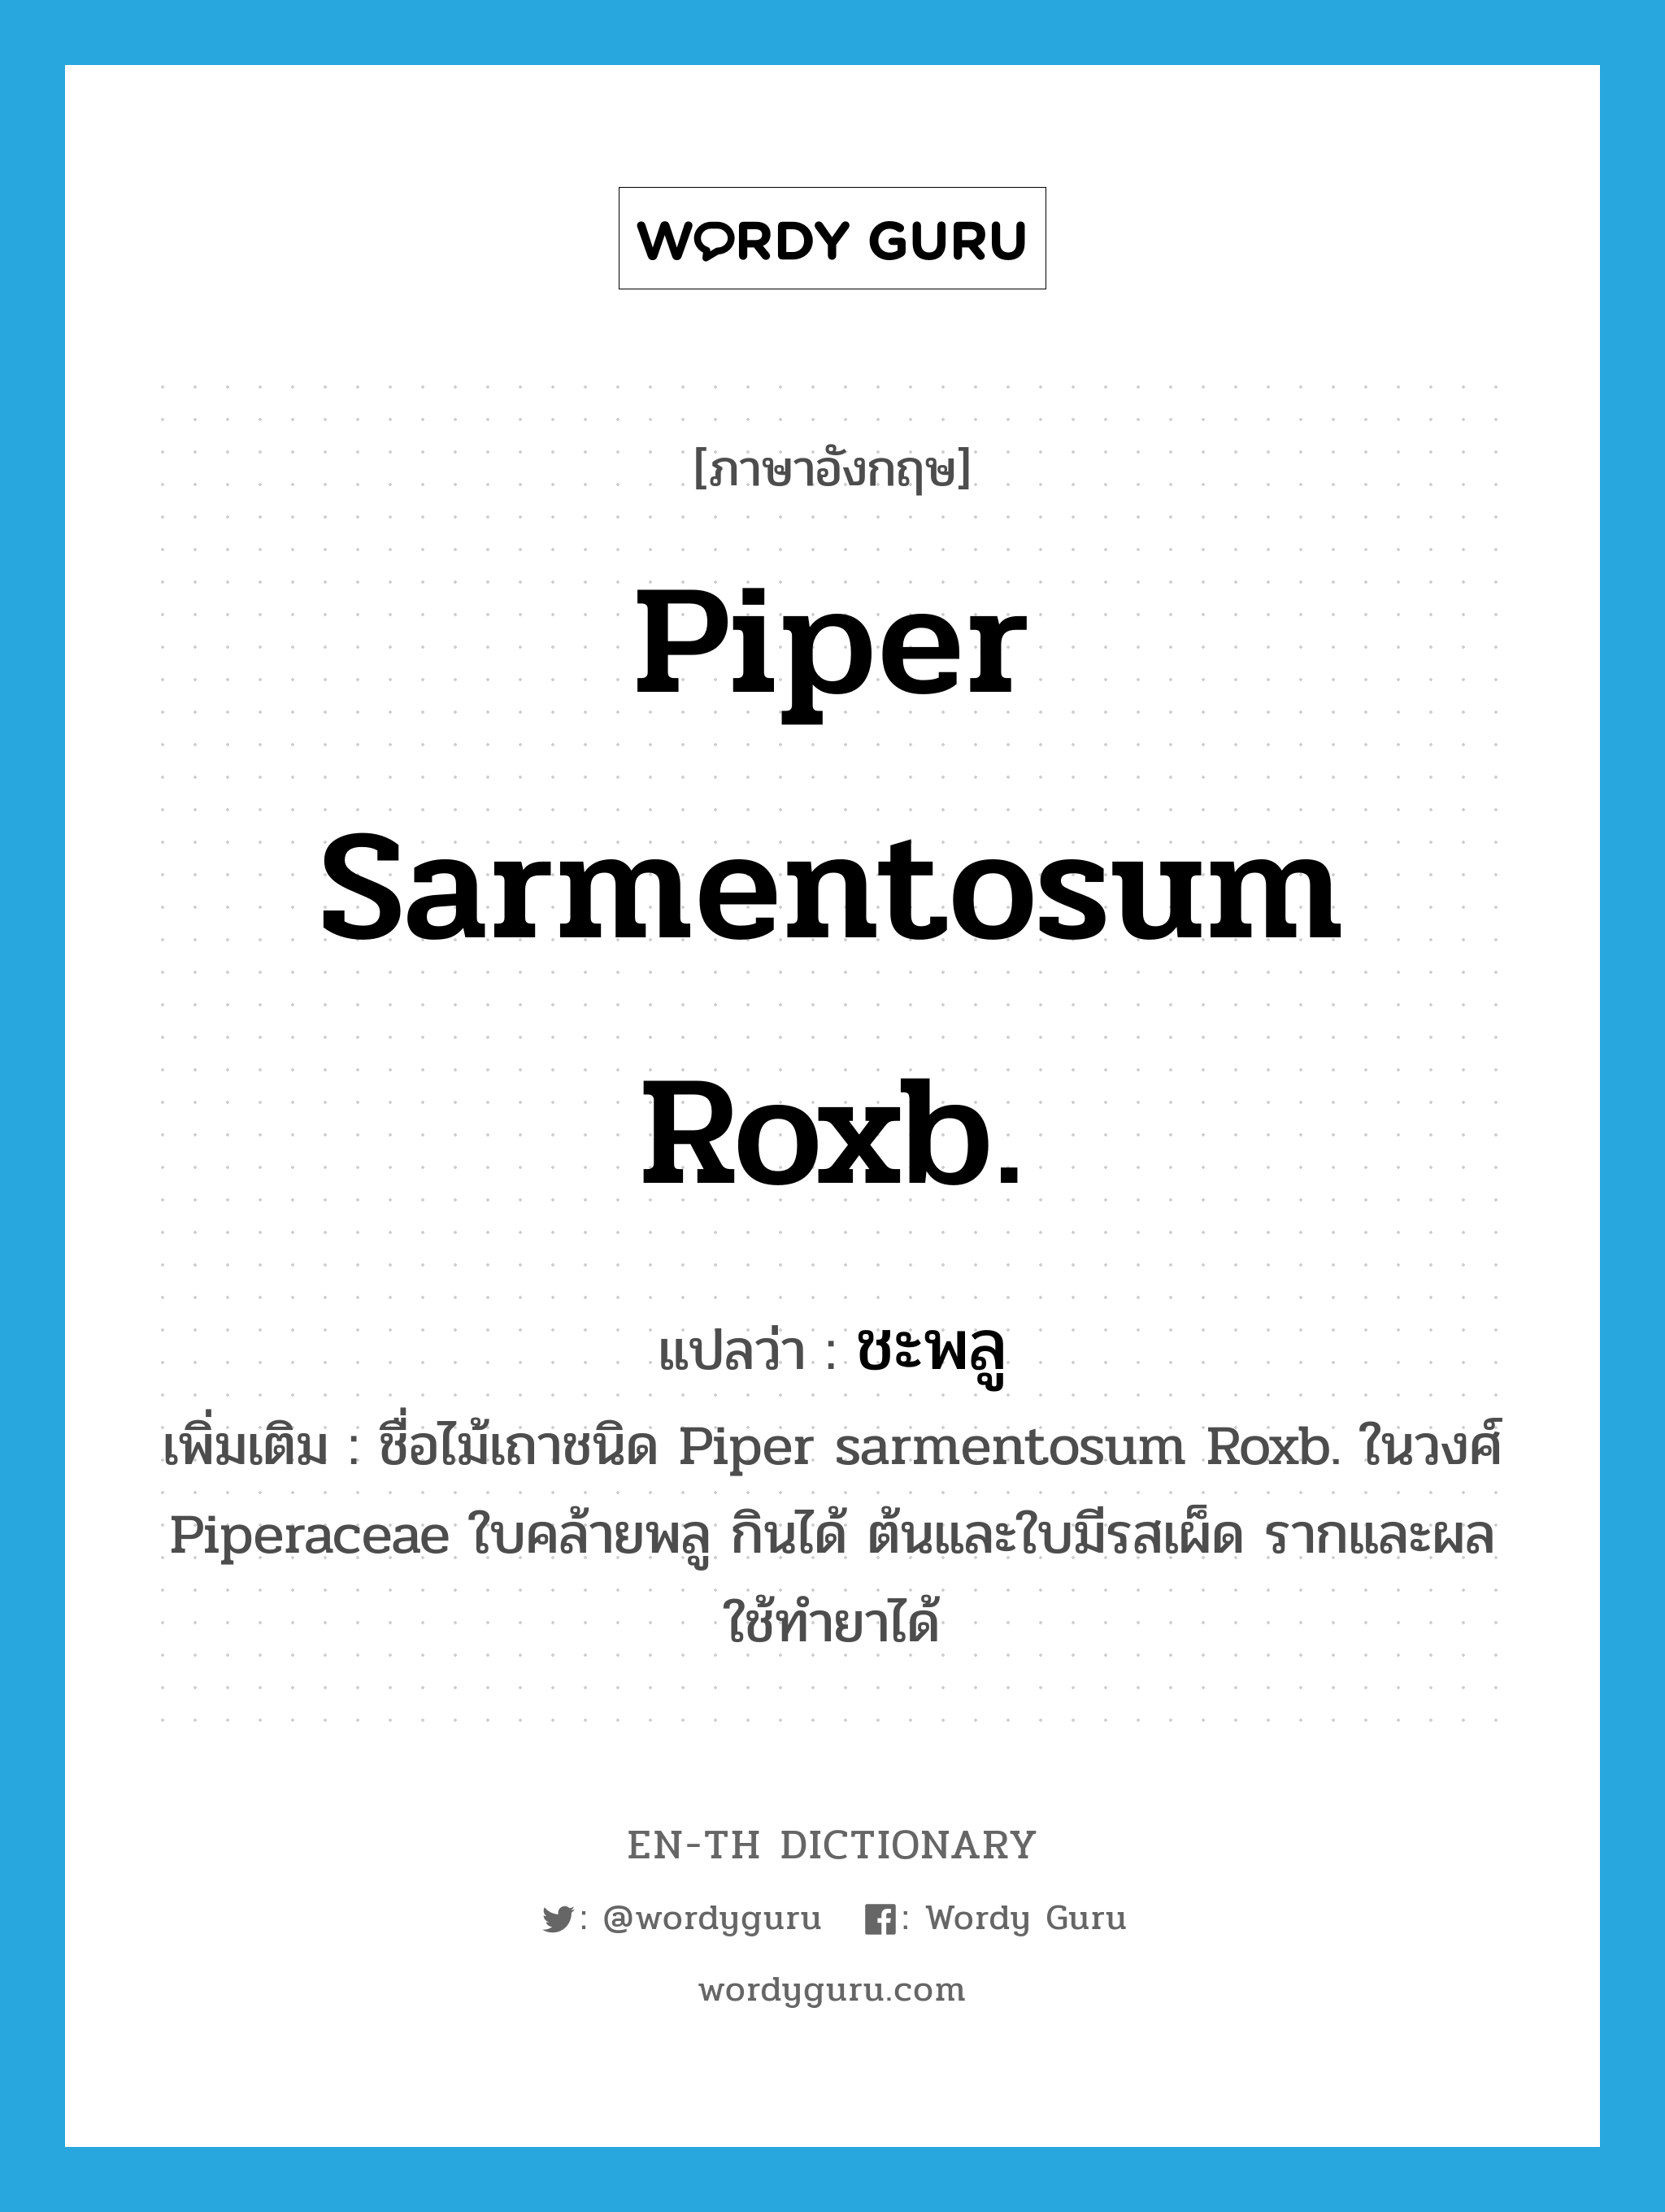 Piper sarmentosum Roxb. แปลว่า?, คำศัพท์ภาษาอังกฤษ Piper sarmentosum Roxb. แปลว่า ชะพลู ประเภท N เพิ่มเติม ชื่อไม้เถาชนิด Piper sarmentosum Roxb. ในวงศ์ Piperaceae ใบคล้ายพลู กินได้ ต้นและใบมีรสเผ็ด รากและผลใช้ทำยาได้ หมวด N